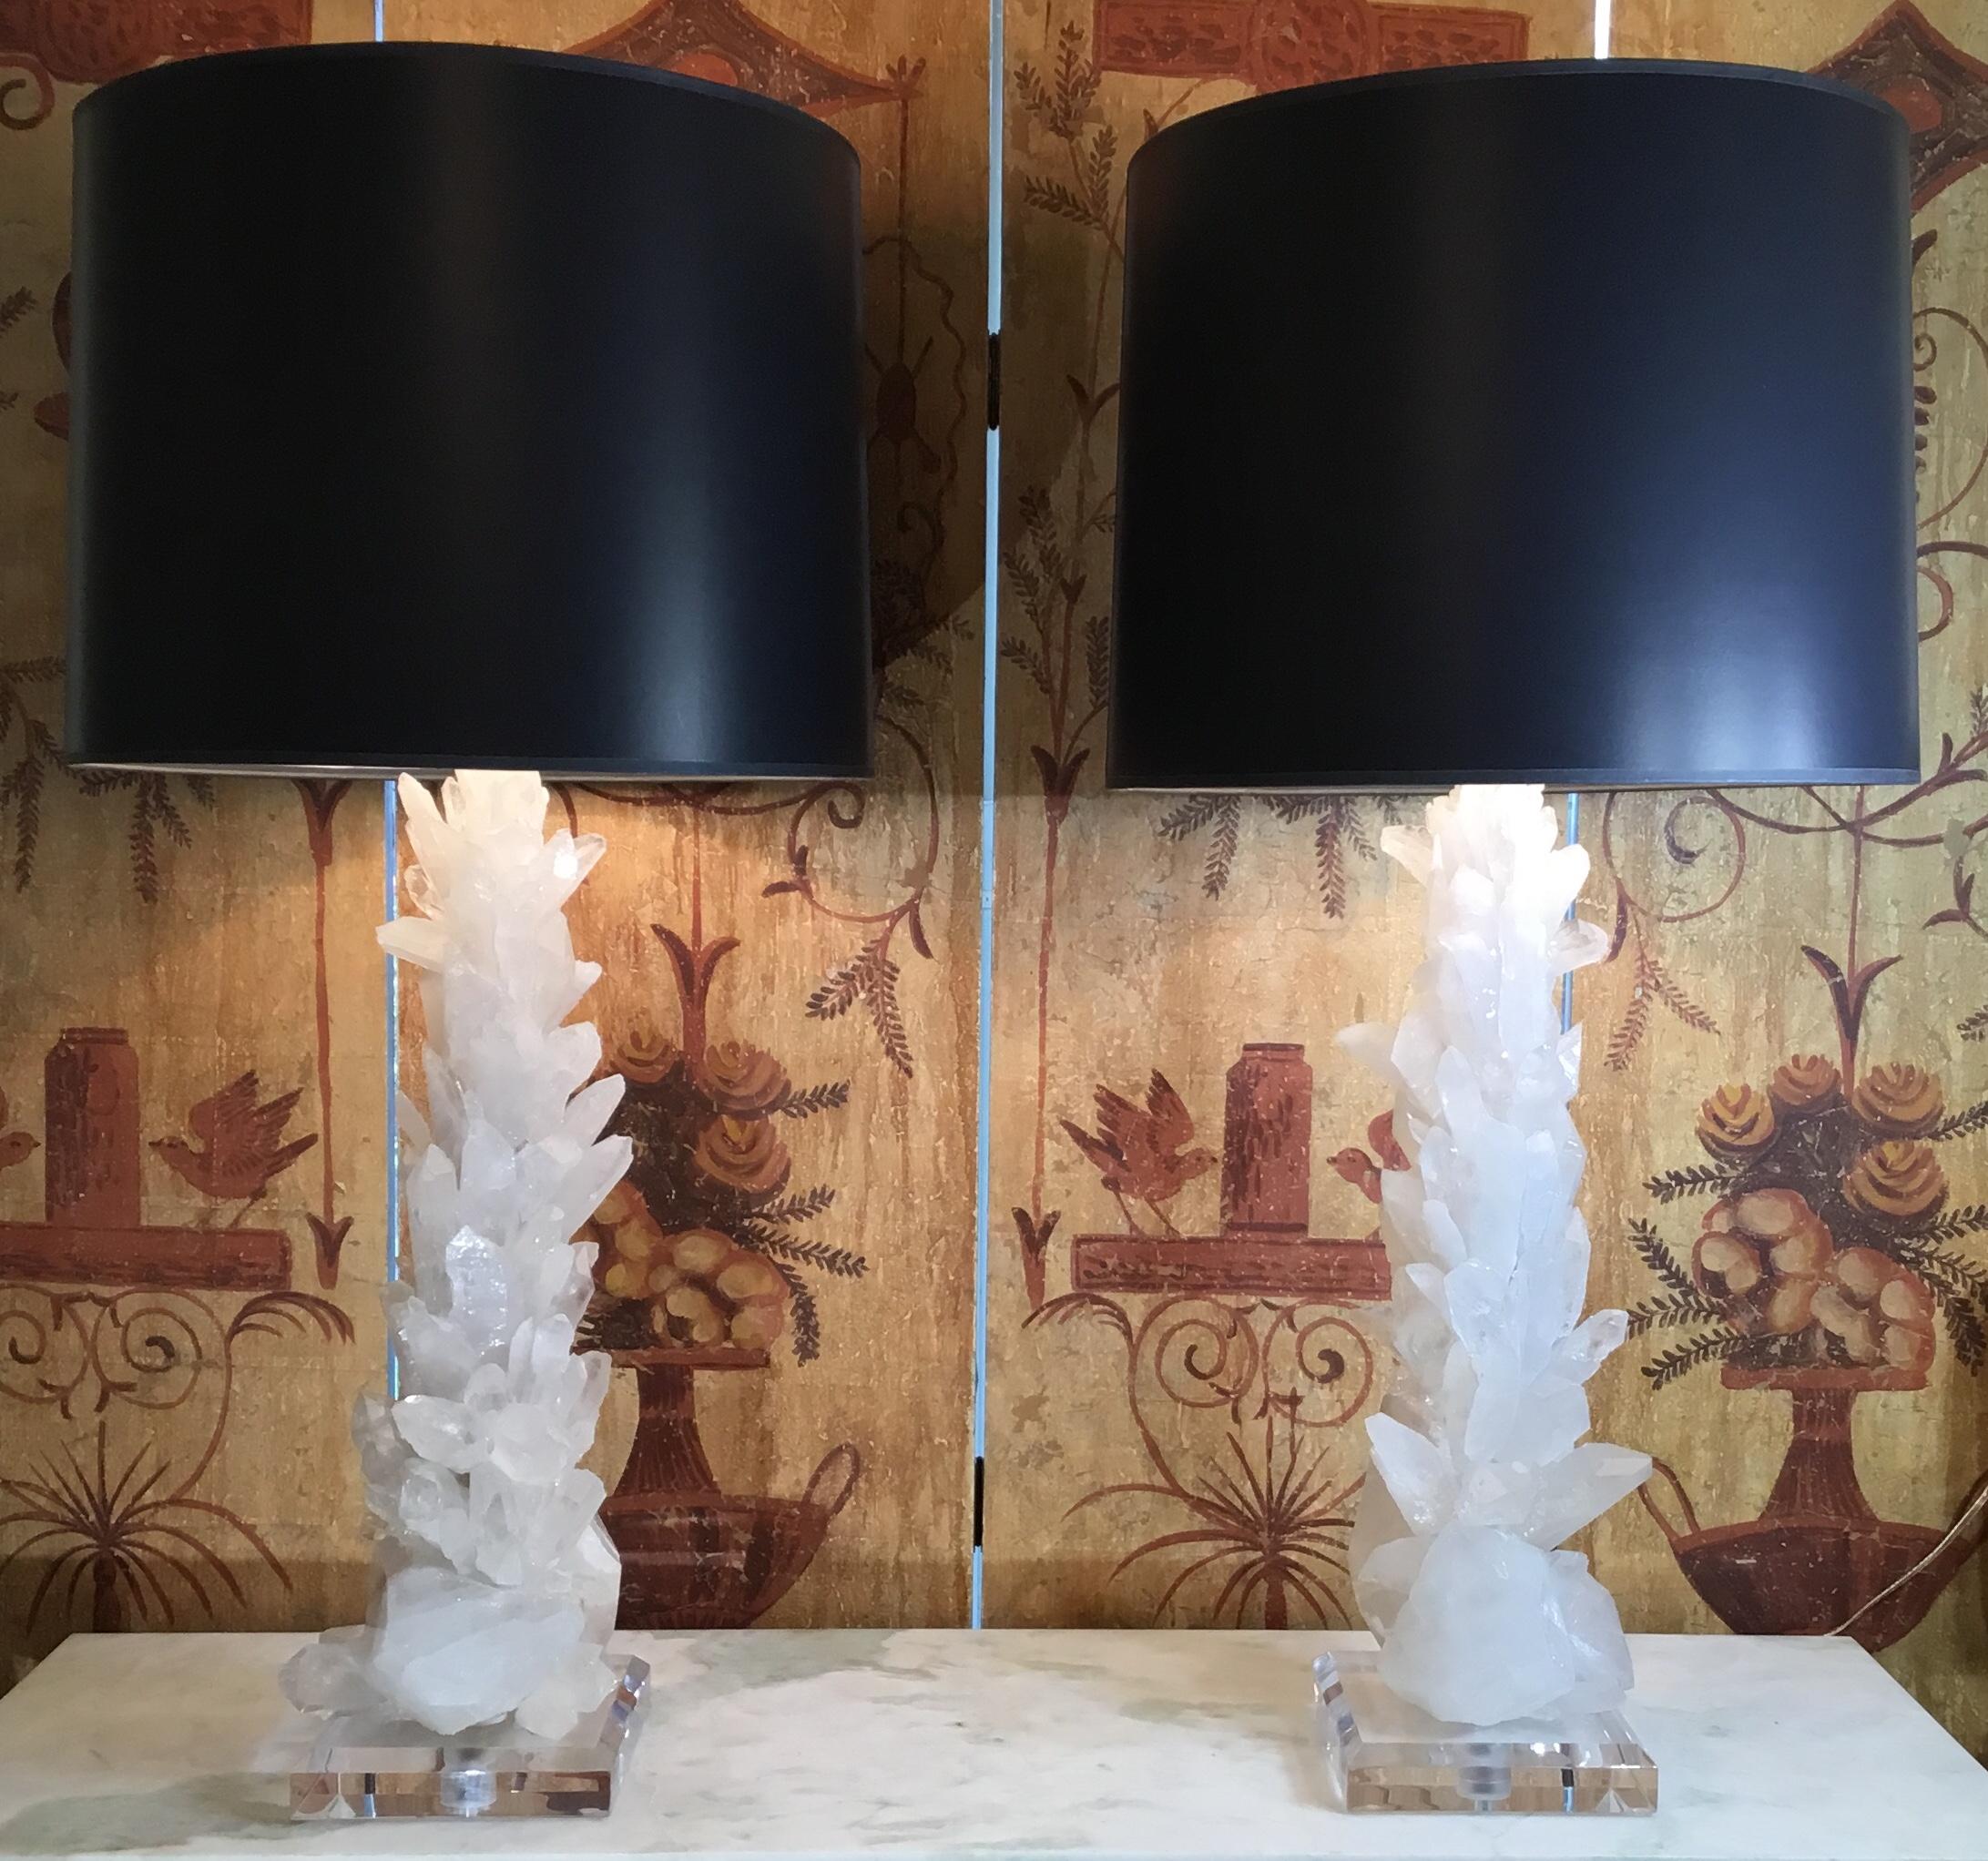 Einzigartiges Paar Tischlampen aus echten Kristallquarzsplittern und Kristallspitzen in weißen Farben, kunstvoll zusammengesetzt, um schöne und beeindruckende Kunstobjekte für die Ausstellung zu schaffen.
Abgeschrägter Sockel aus klarem Lucite,